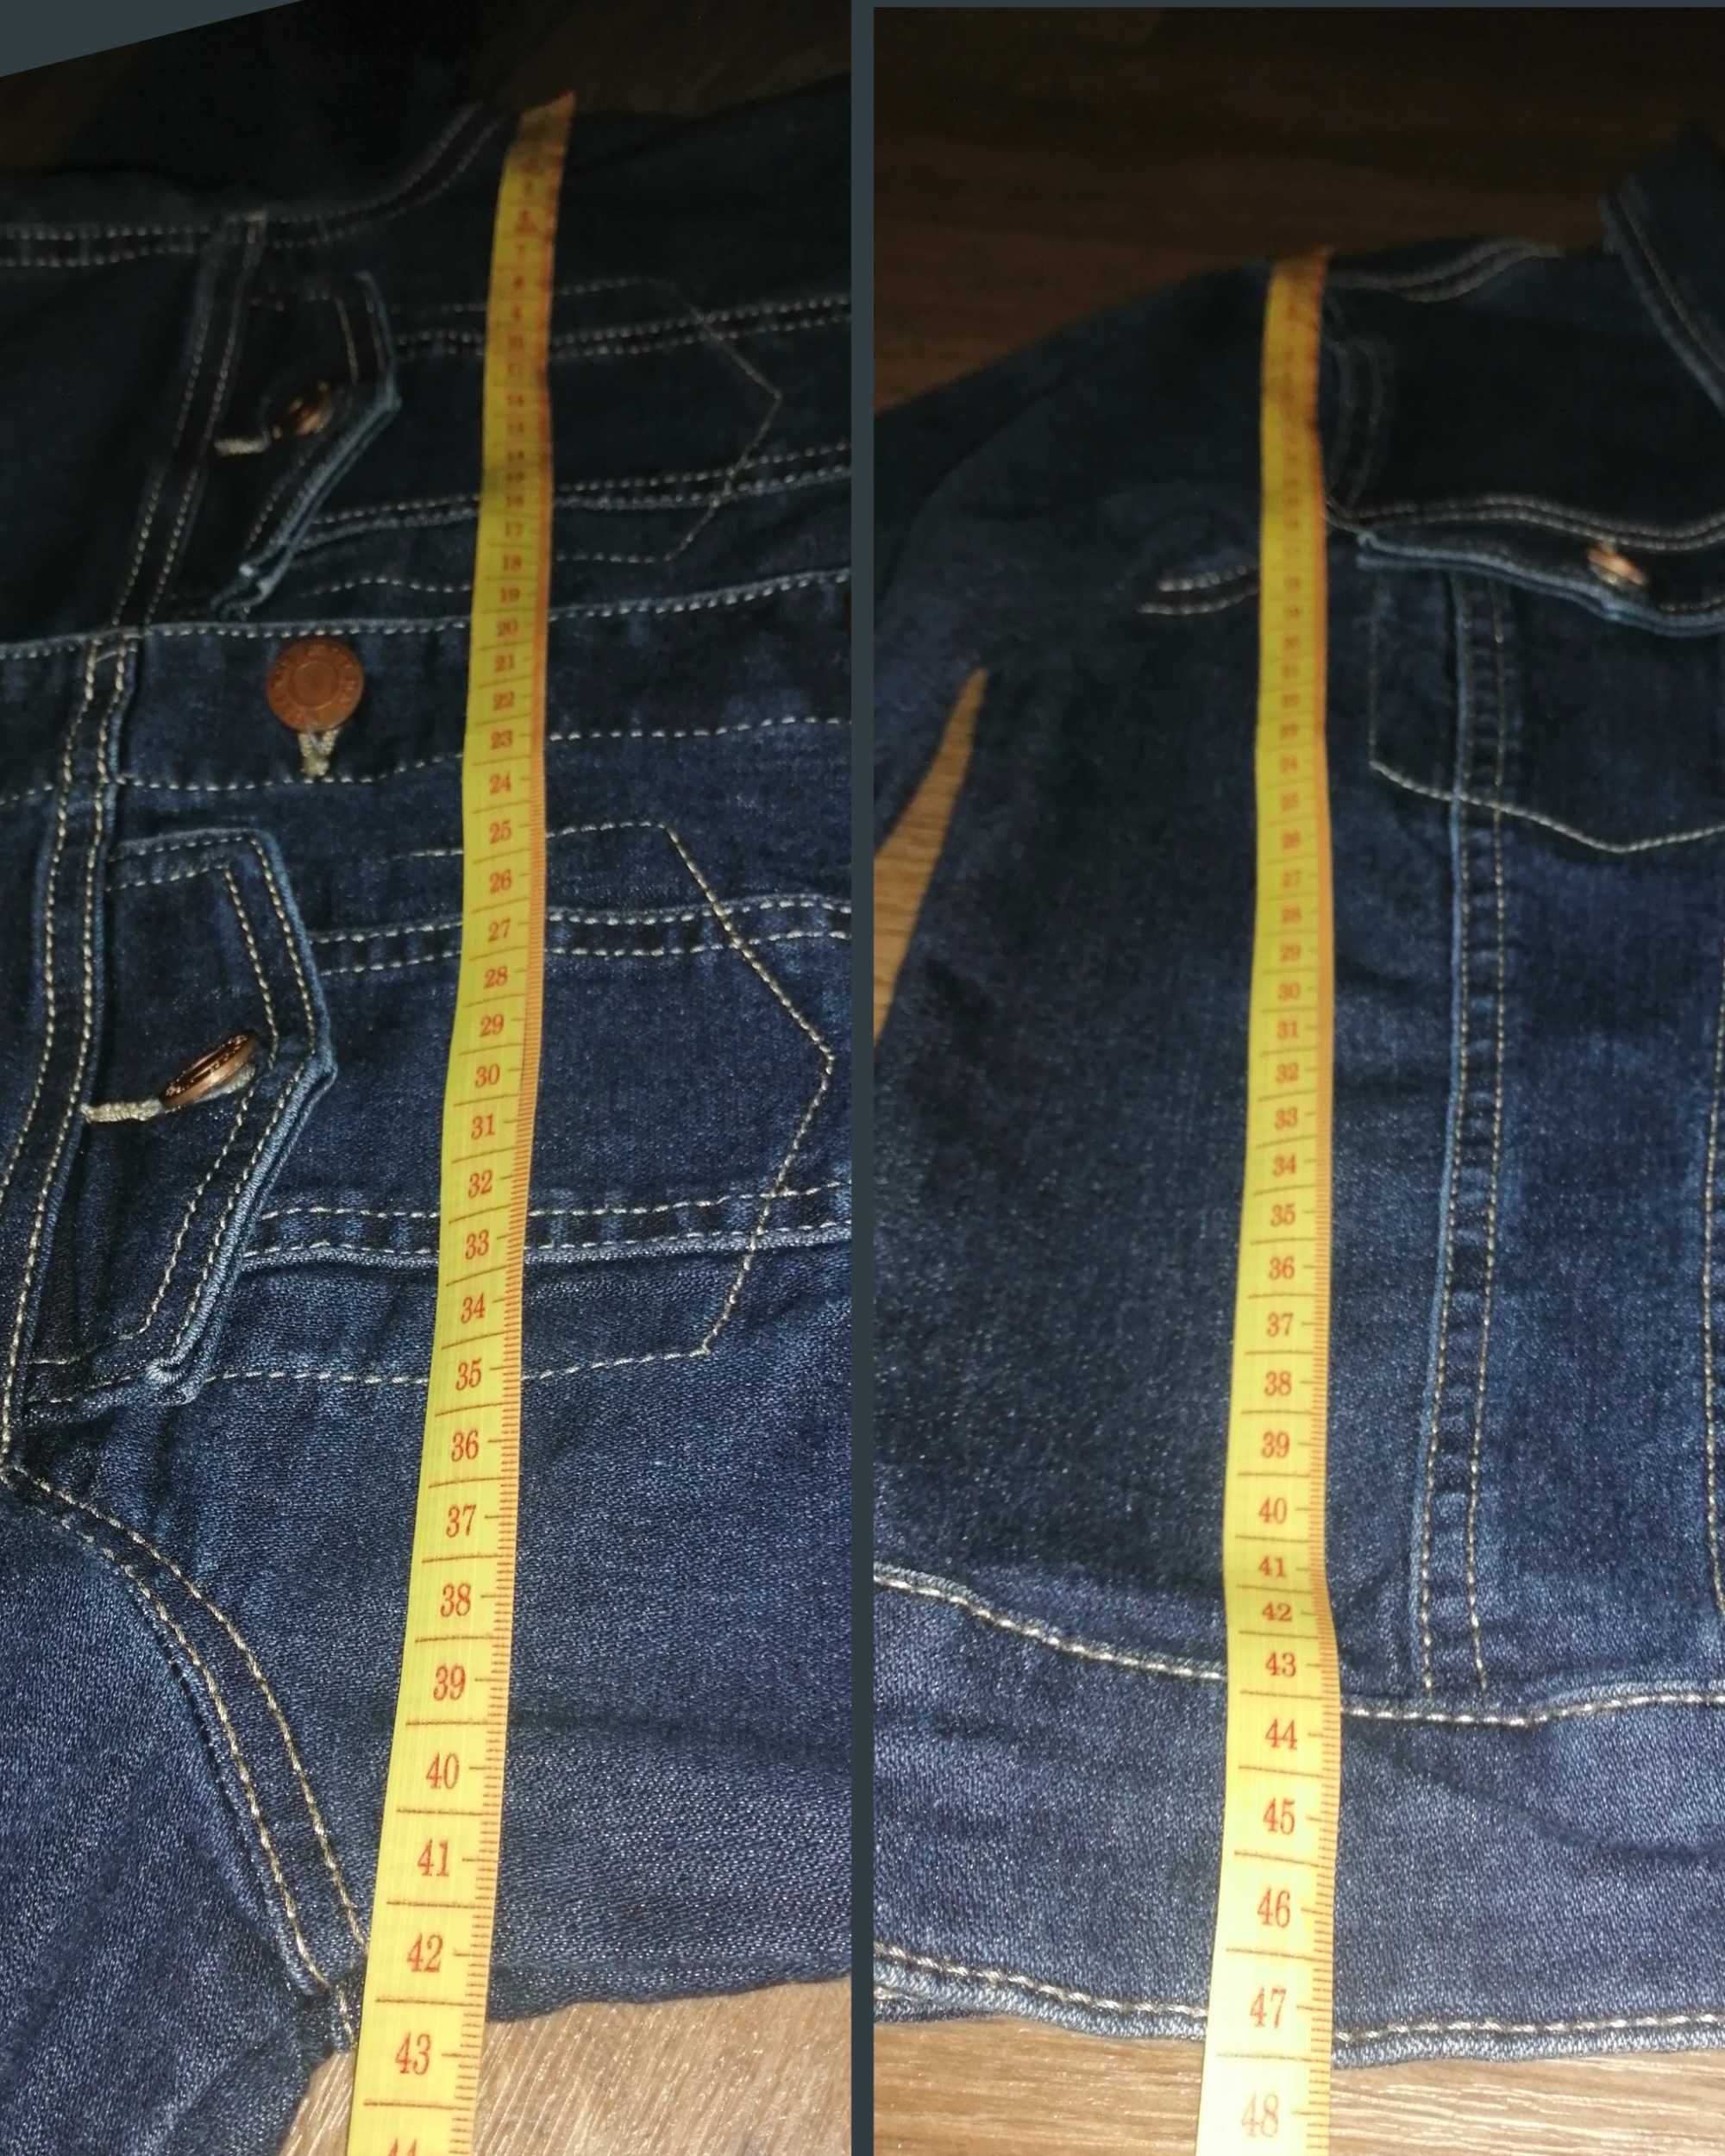 размер ХS, S, джинсовая куртка пиджак